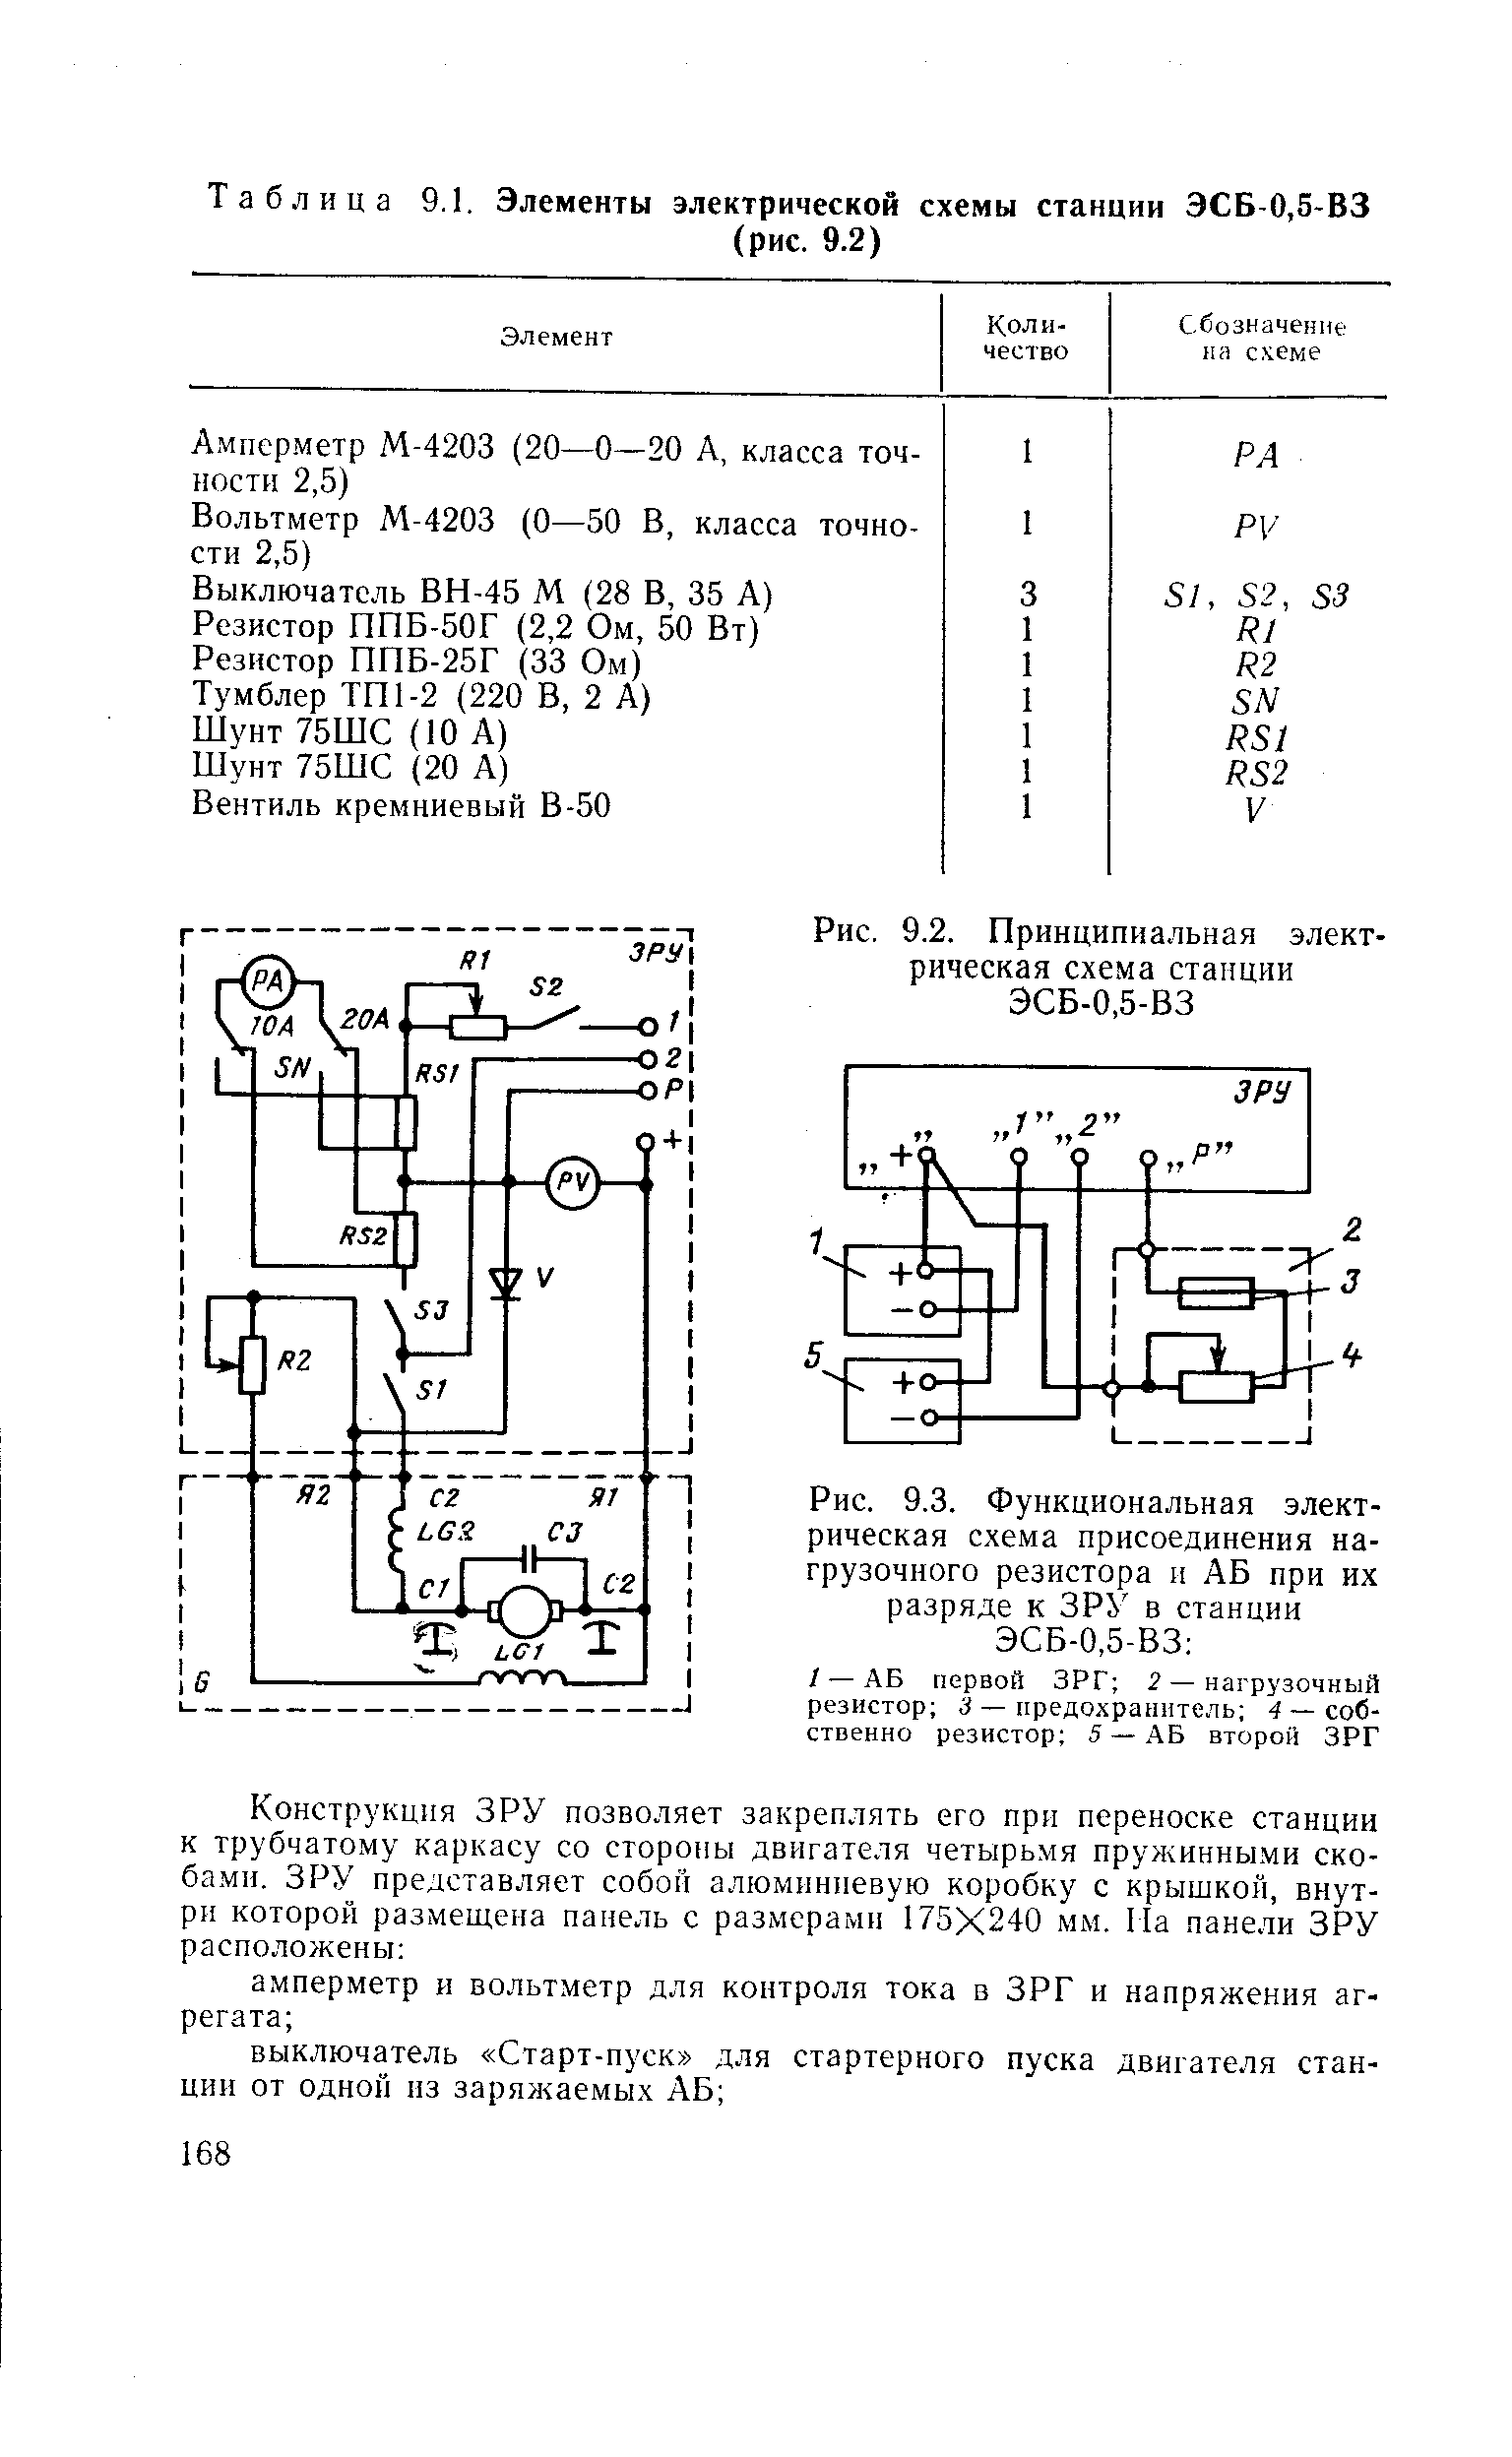 Рис. 9.3. Функциональная электрическая схема присоединения нагрузочного резистора и АБ при их разряде к ЗР в станции ЭСБ-0,5-ВЗ 
